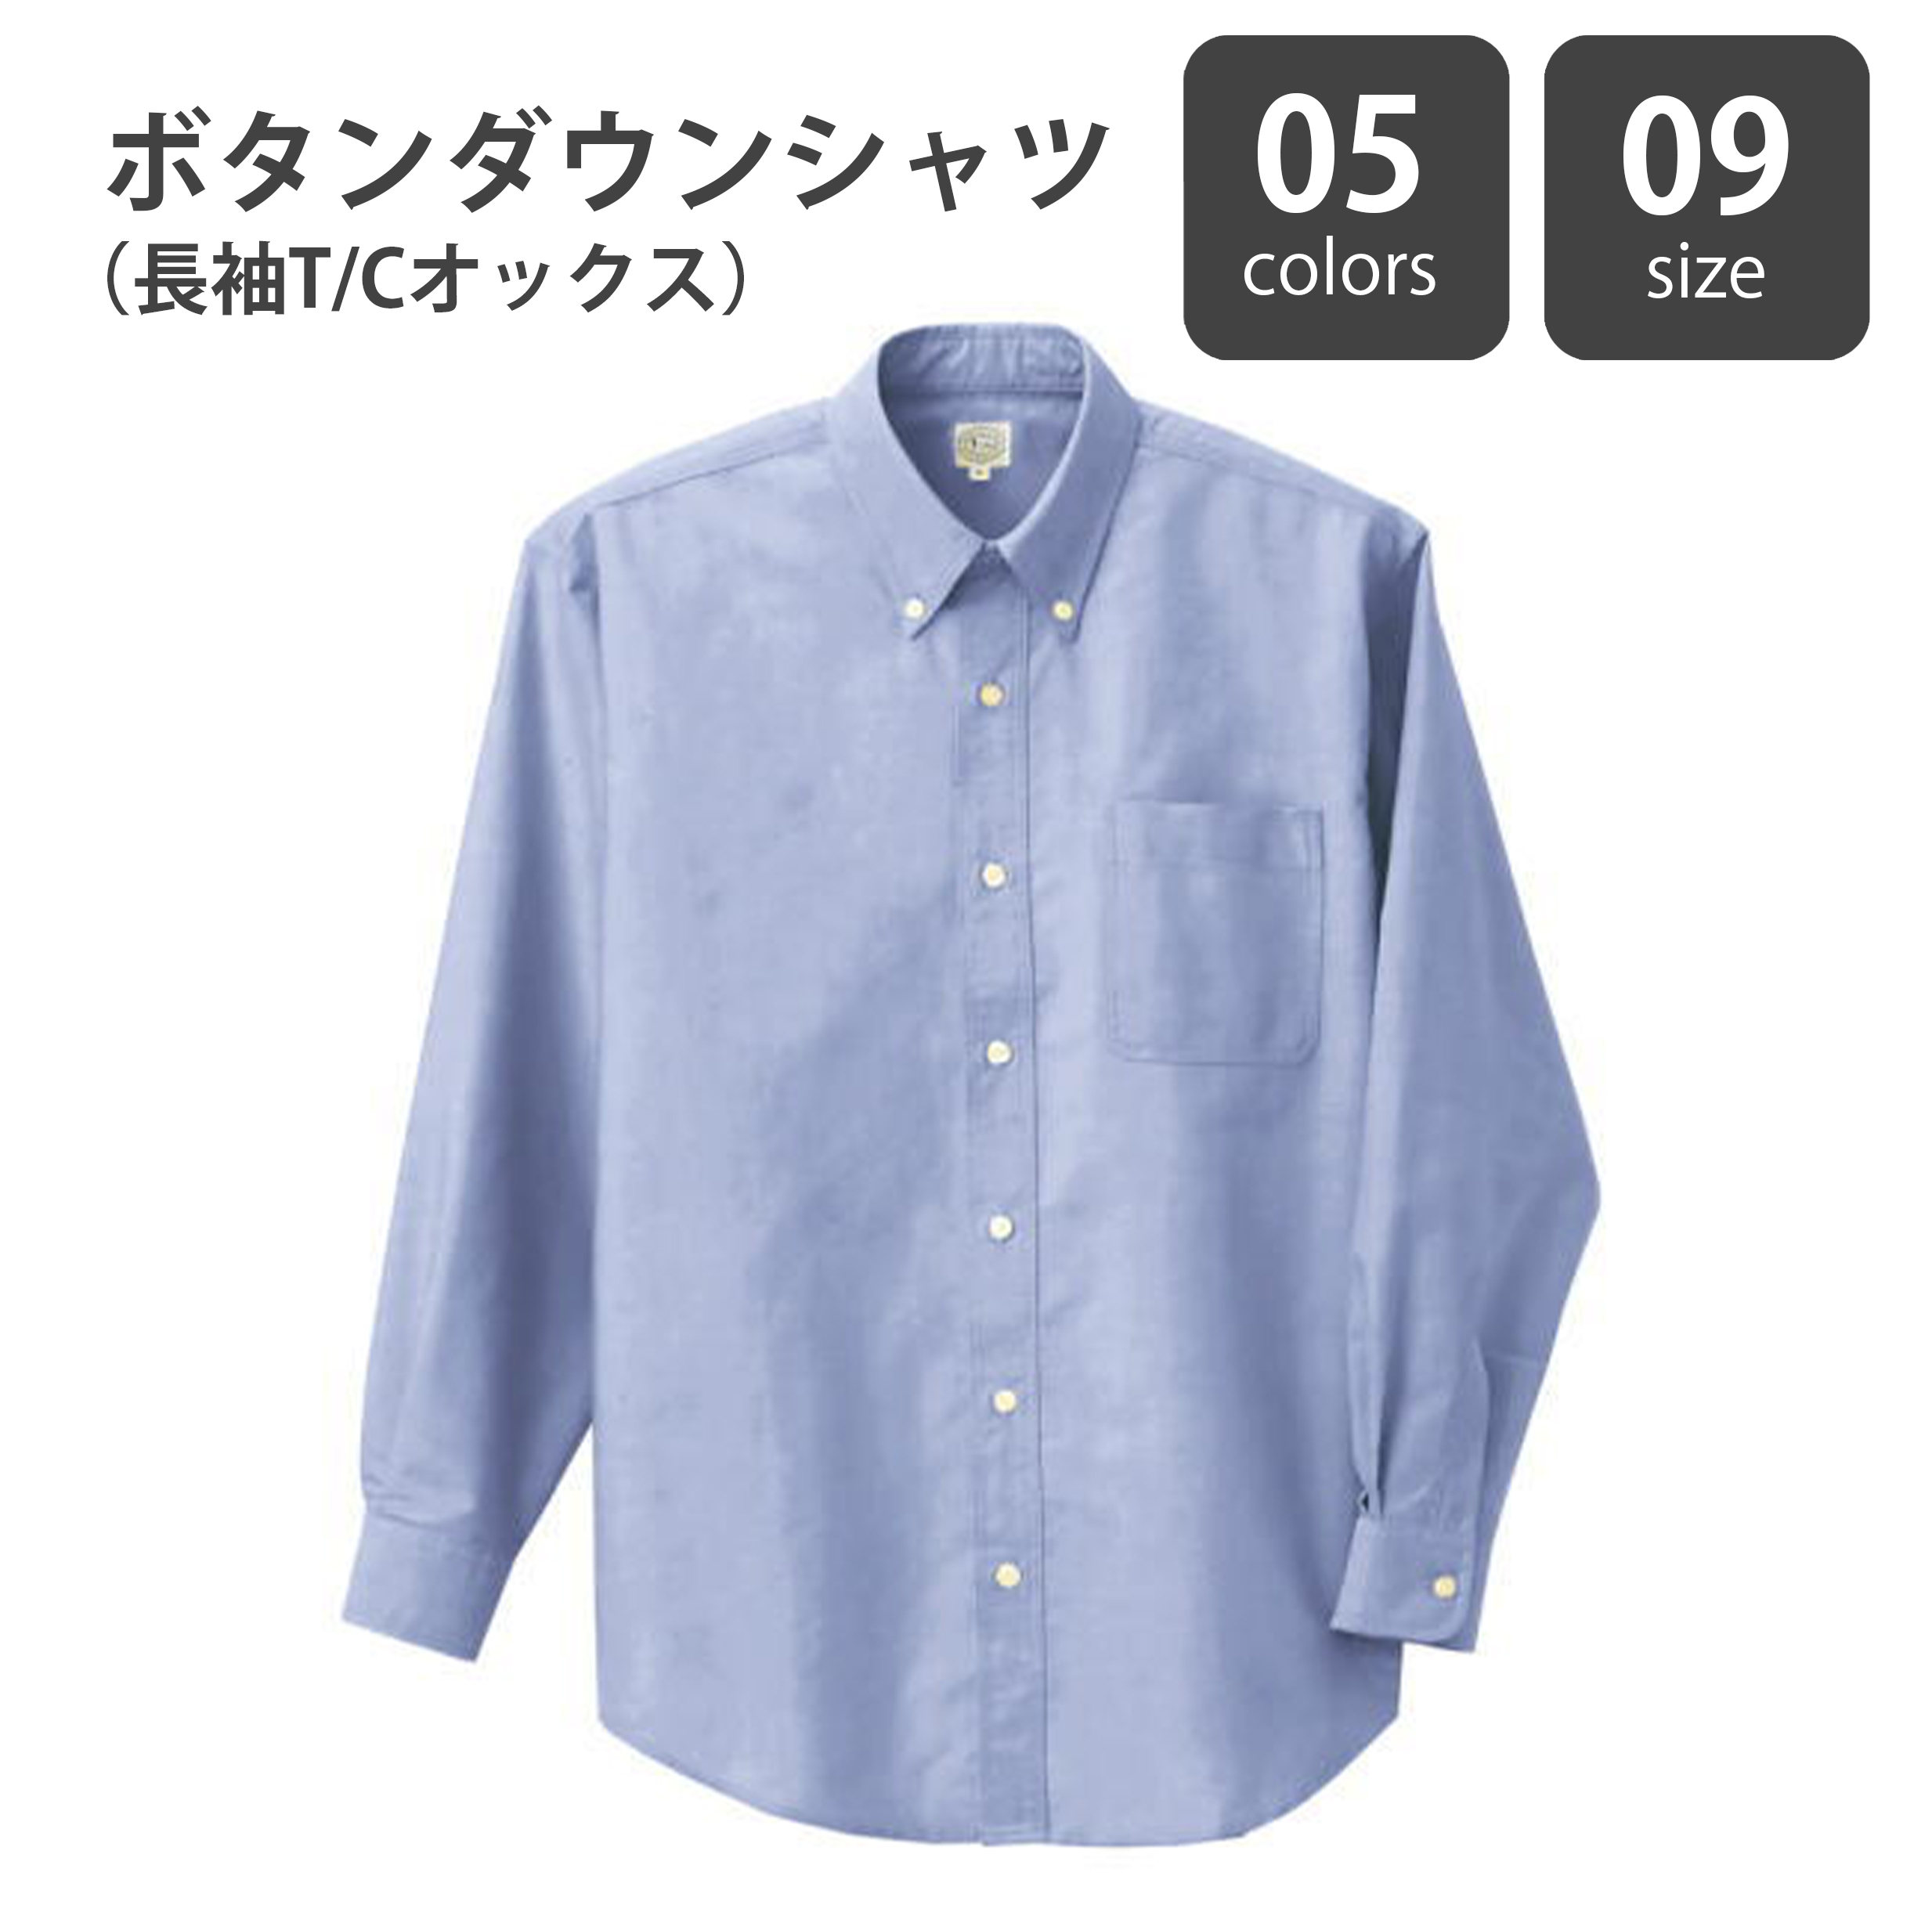 ボタンダウンシャツ(長袖T/Cオックス)